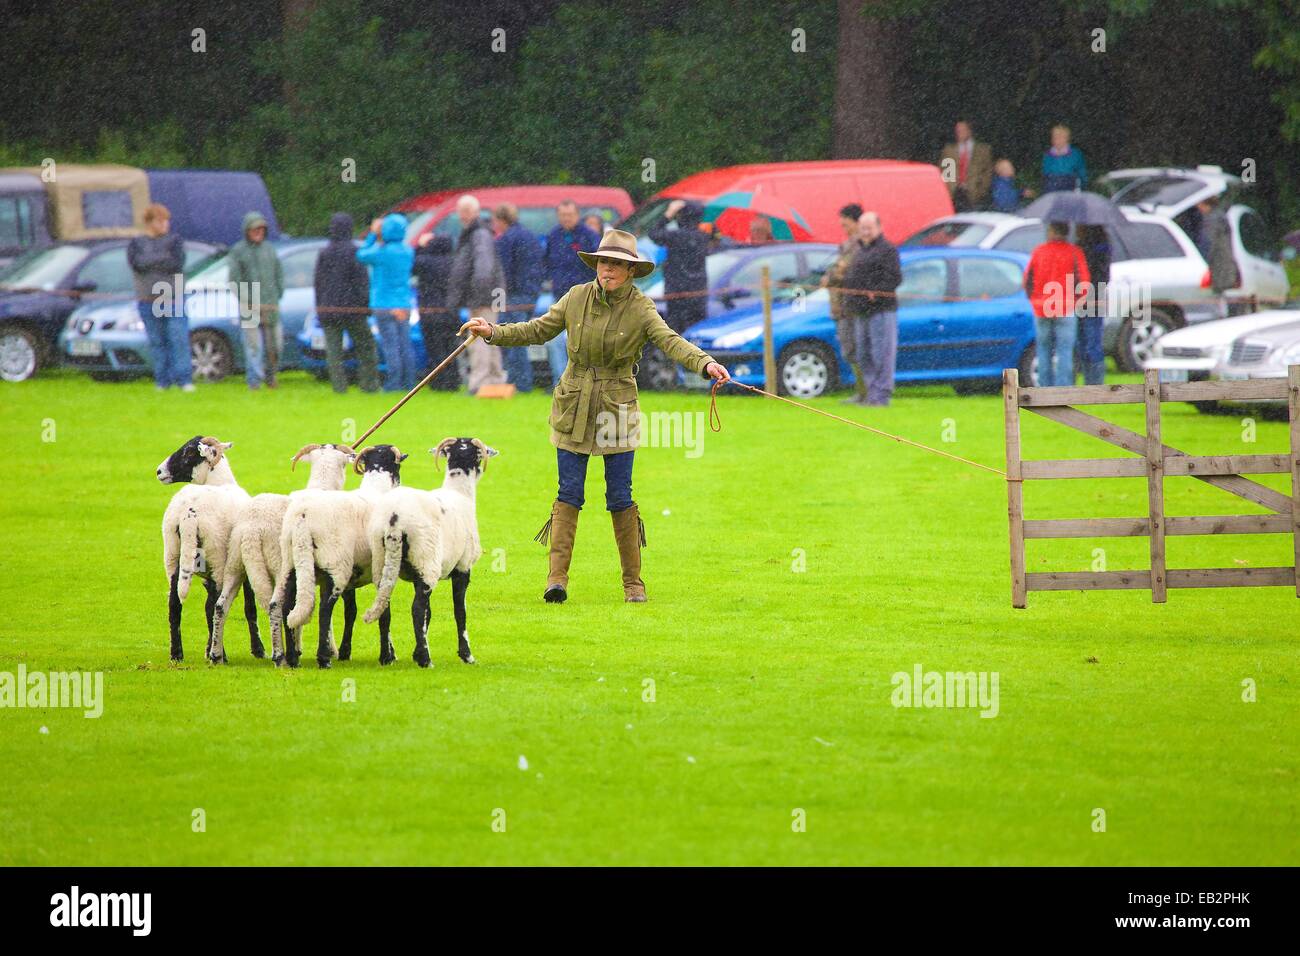 Katy Cropper im Regen im Wettbewerb Patterdale Tag des Hundes in der Nähe von Patterdale, The Lake District, Cumbria, England, UK. Stockfoto